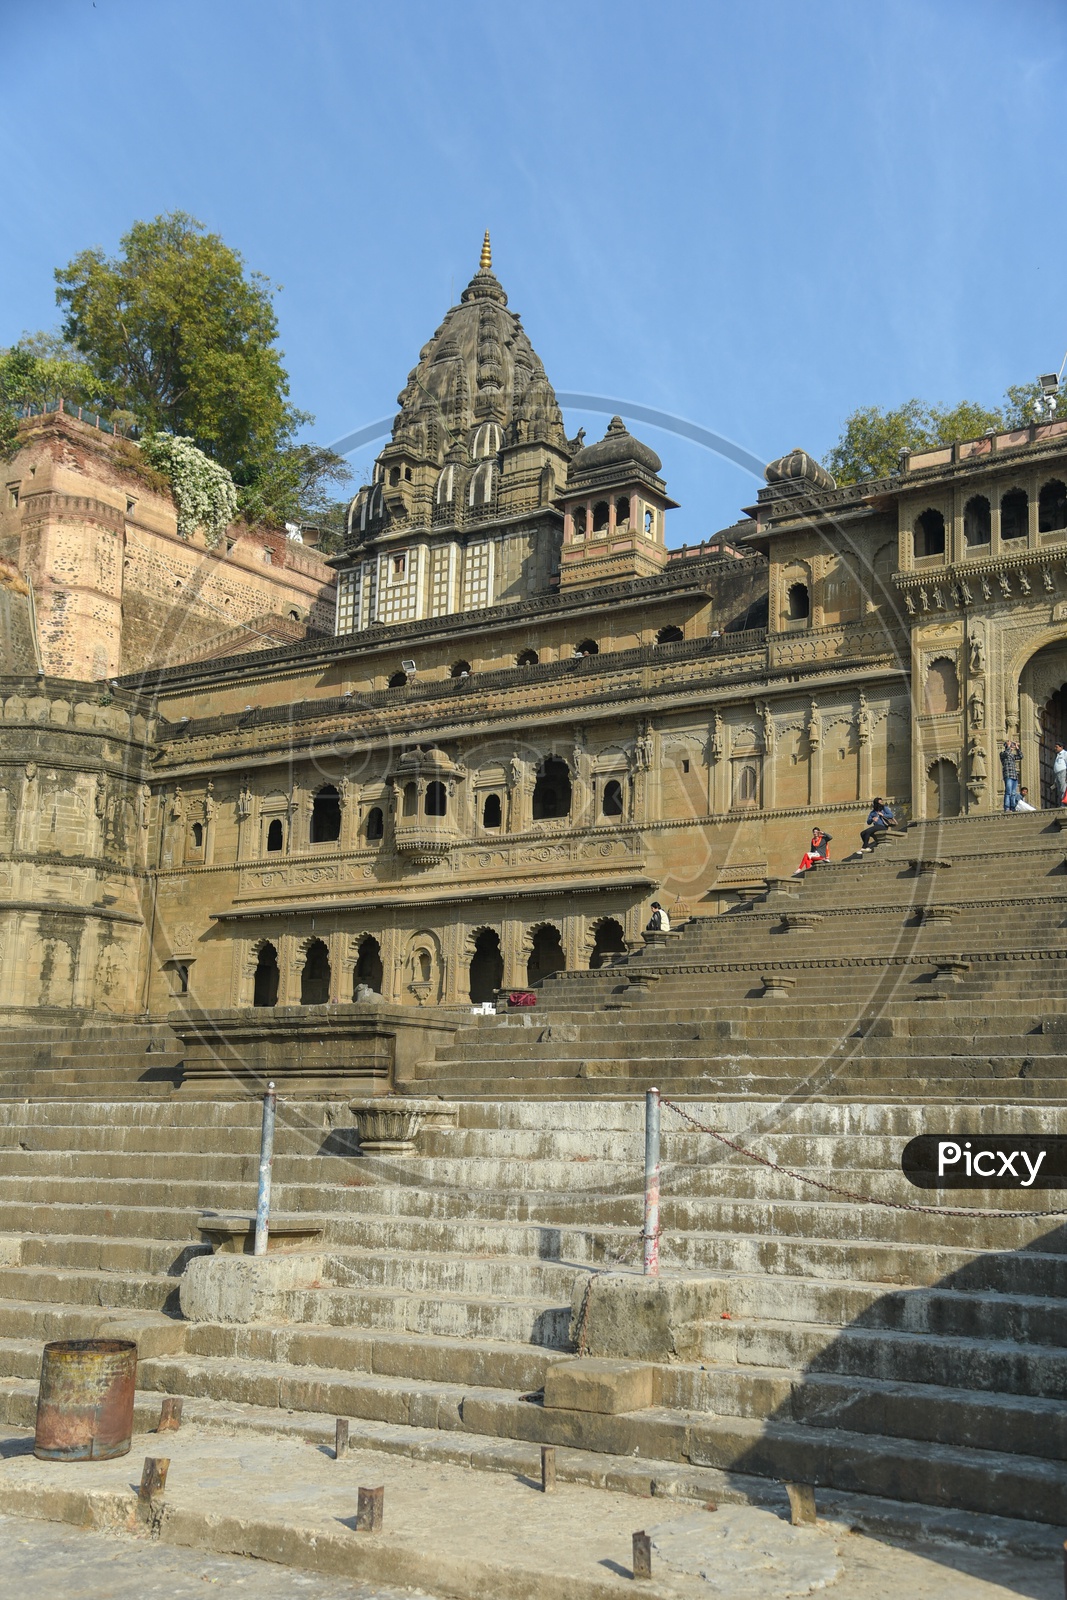 Temple inside Maheshwar Fort